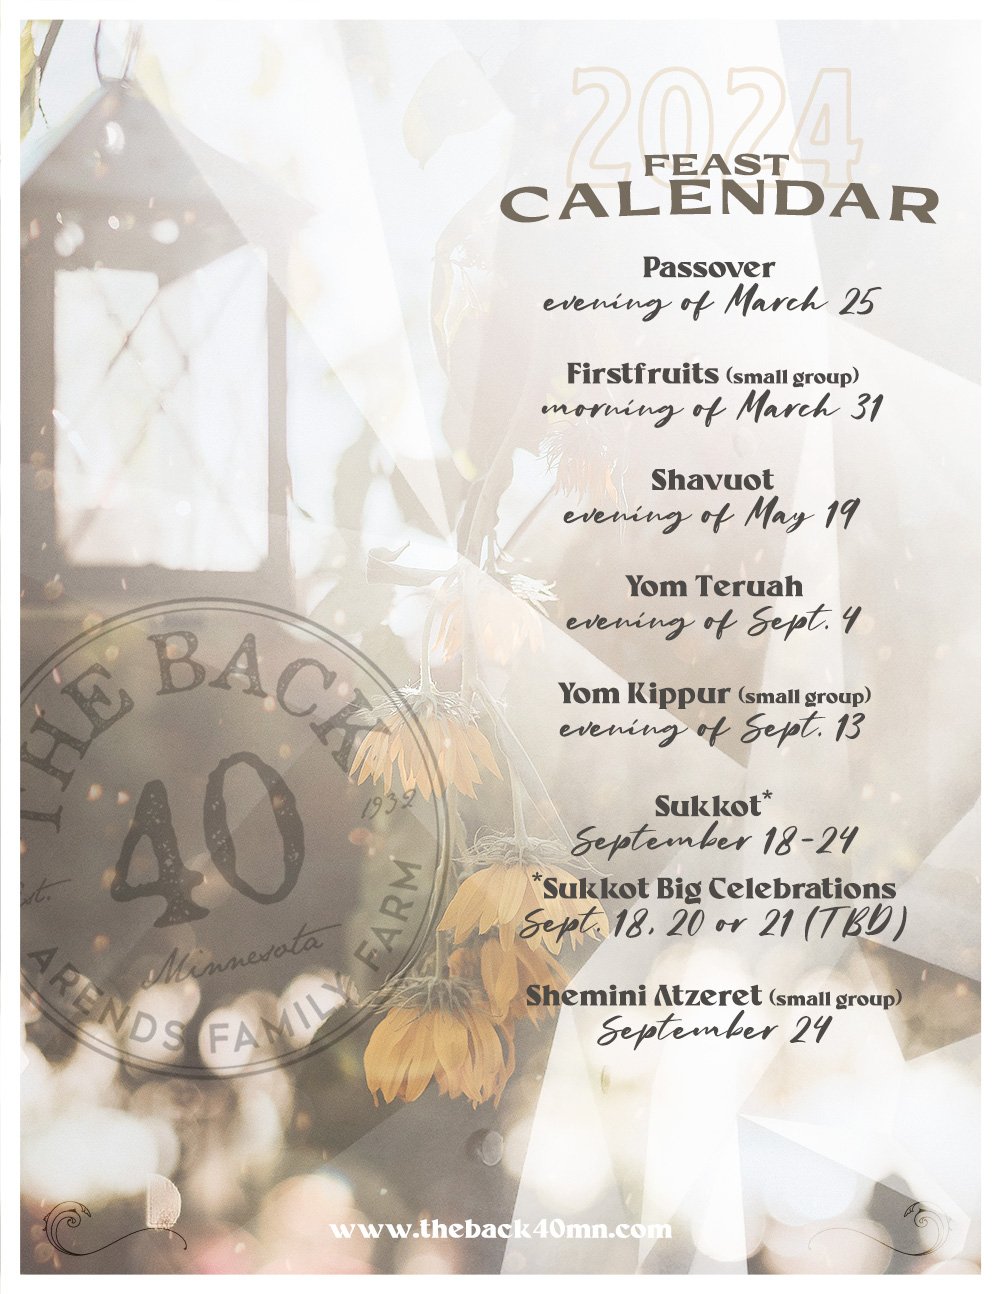 The Back 40 2024 Feast Calendar